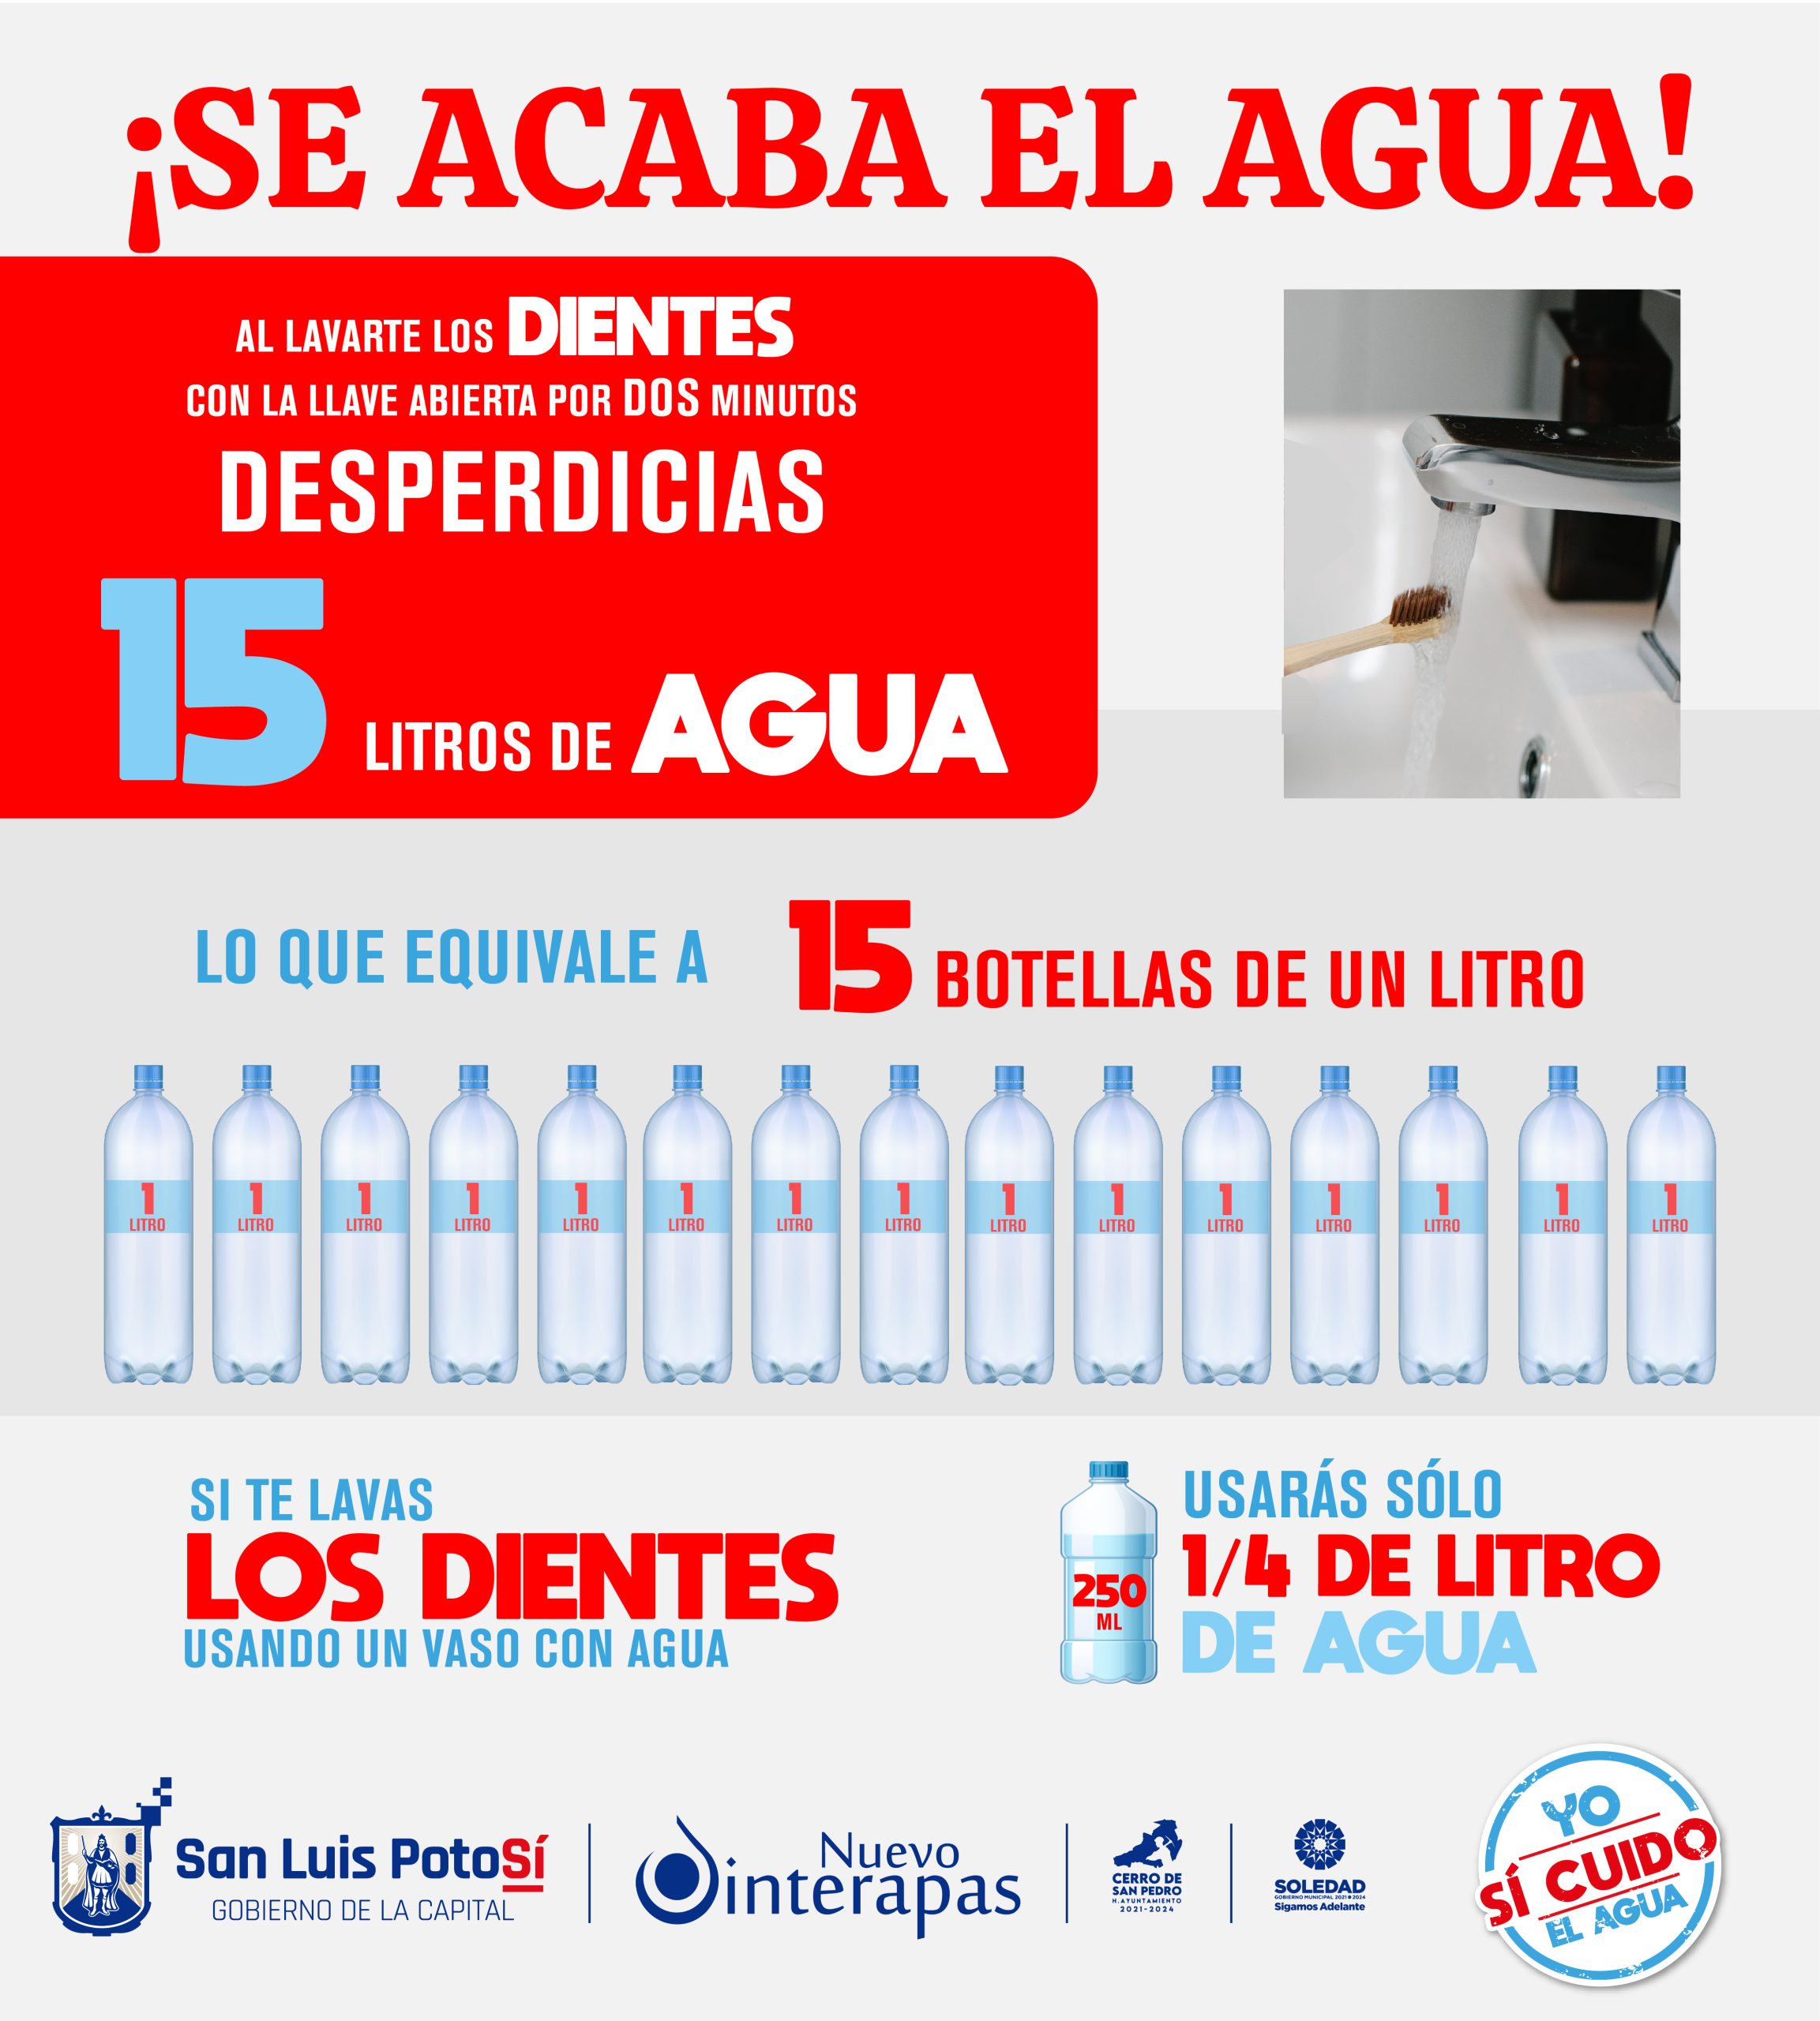 Ante sequía extrema en la capital de San Luis Potosí, llama INTERAPAS a seguir cuidando el agua.